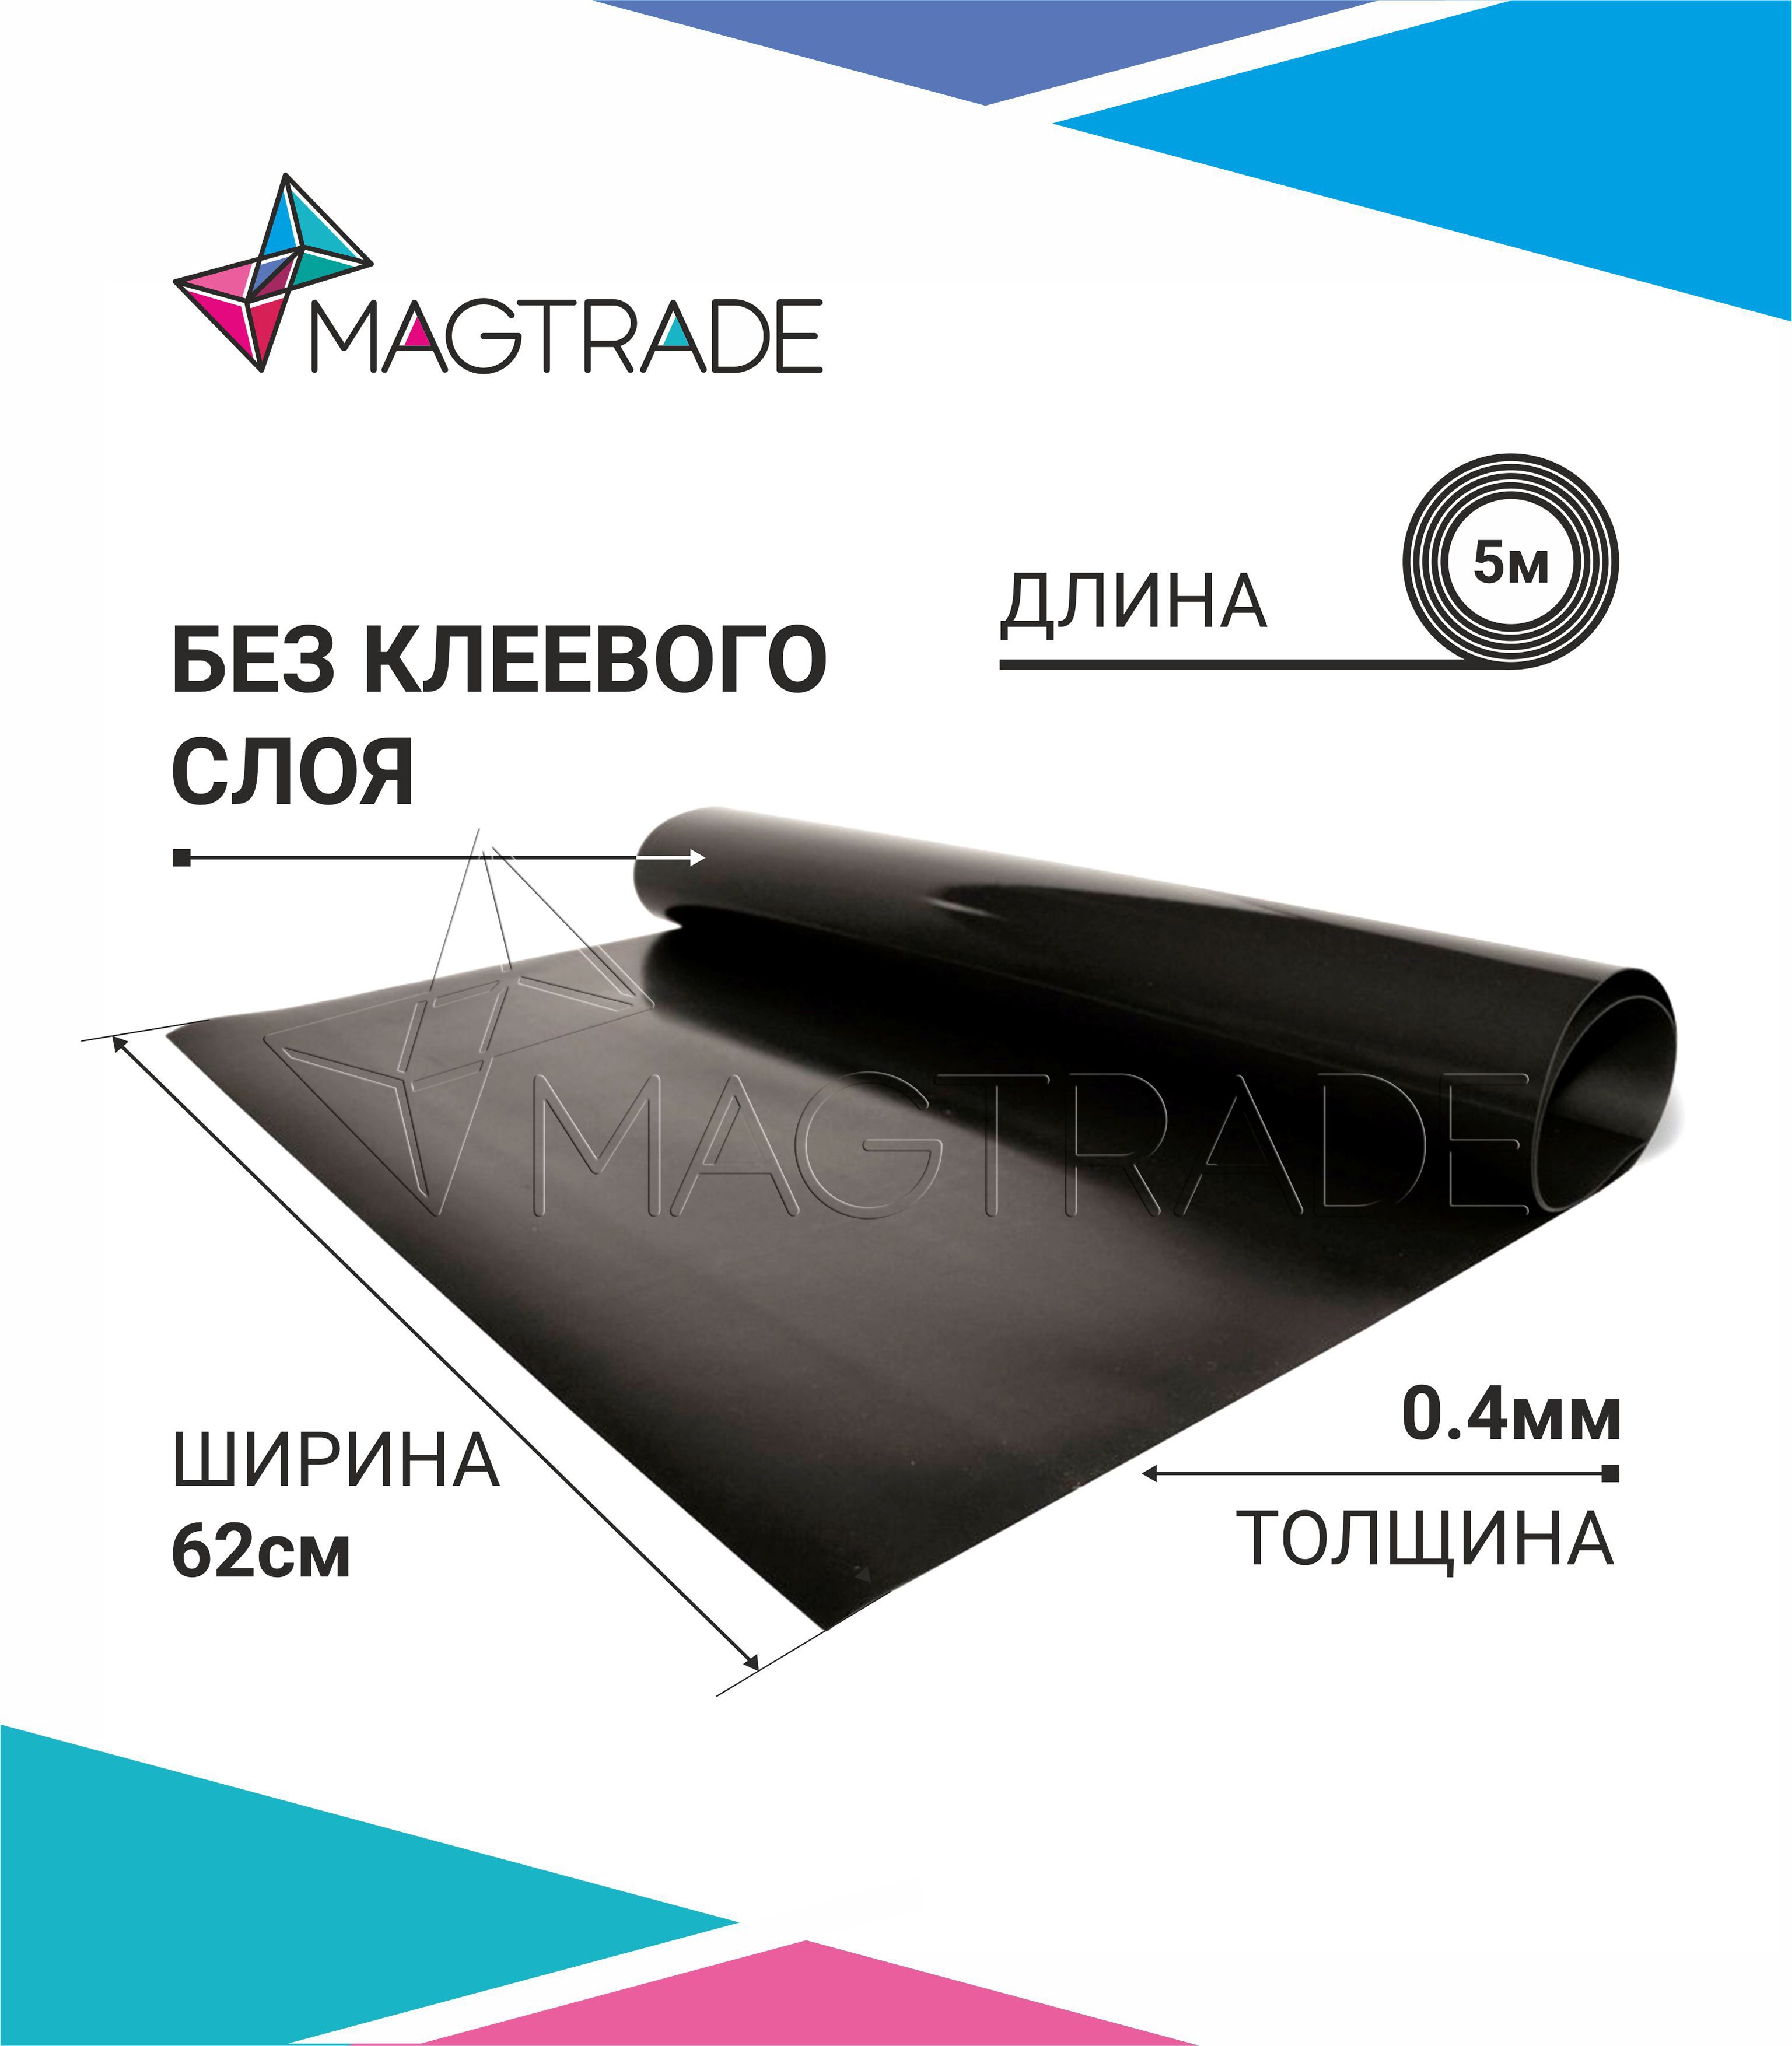 Магнитный винил MAGTRADE без клеевого слоя 0,62 х 5 м, толщина 0,4 мм, лист 5 метров